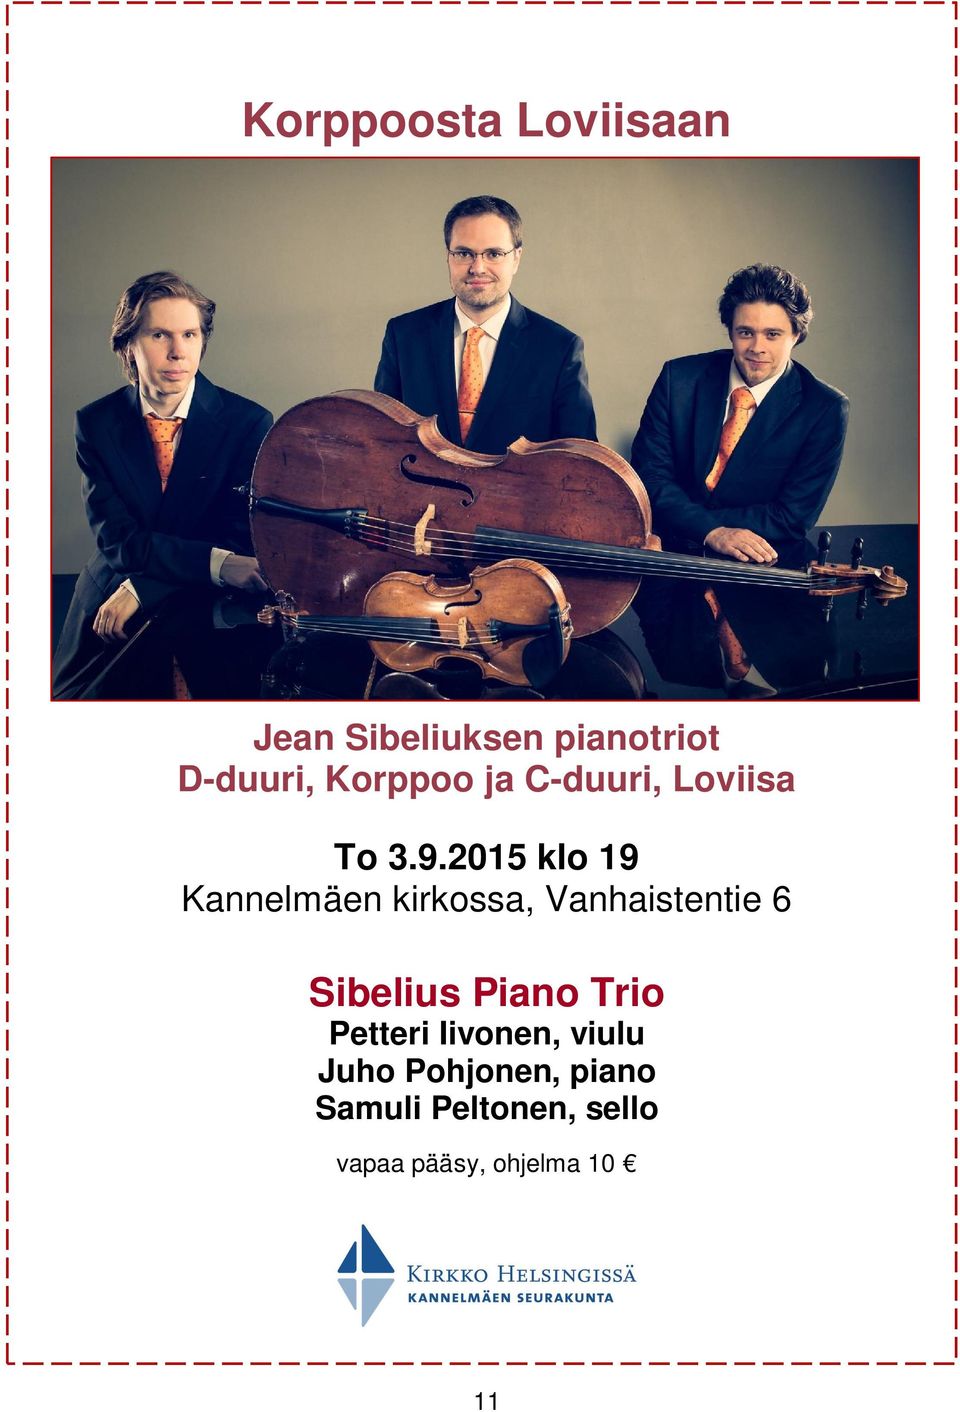 2015 klo 19 Kannelmäen kirkossa, Vanhaistentie 6 Sibelius Piano